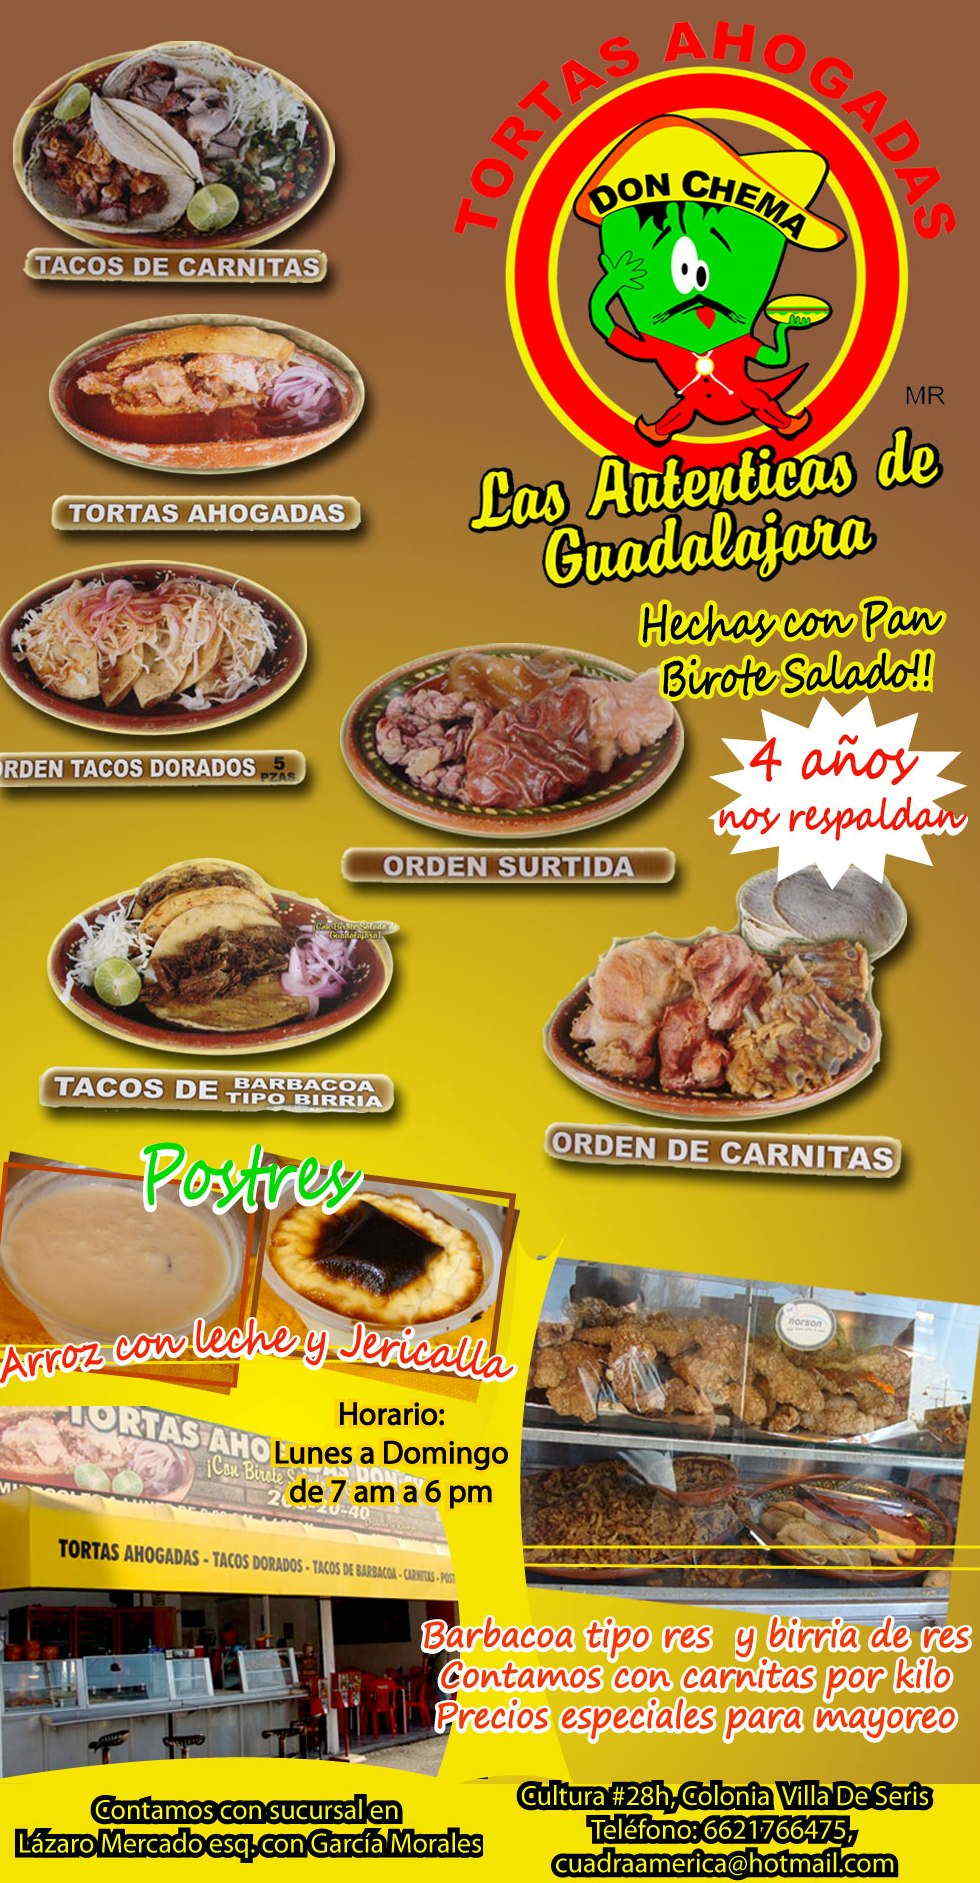 TORTAS AHOGADAS DON CHEMA en Hermosillo anunciado por .  Restaurantes y Comida en Hermosillo Las autenticas de guadalajara y con  birote salado .TORTAS AHOGADAS DON CHEMA en el buen fin.